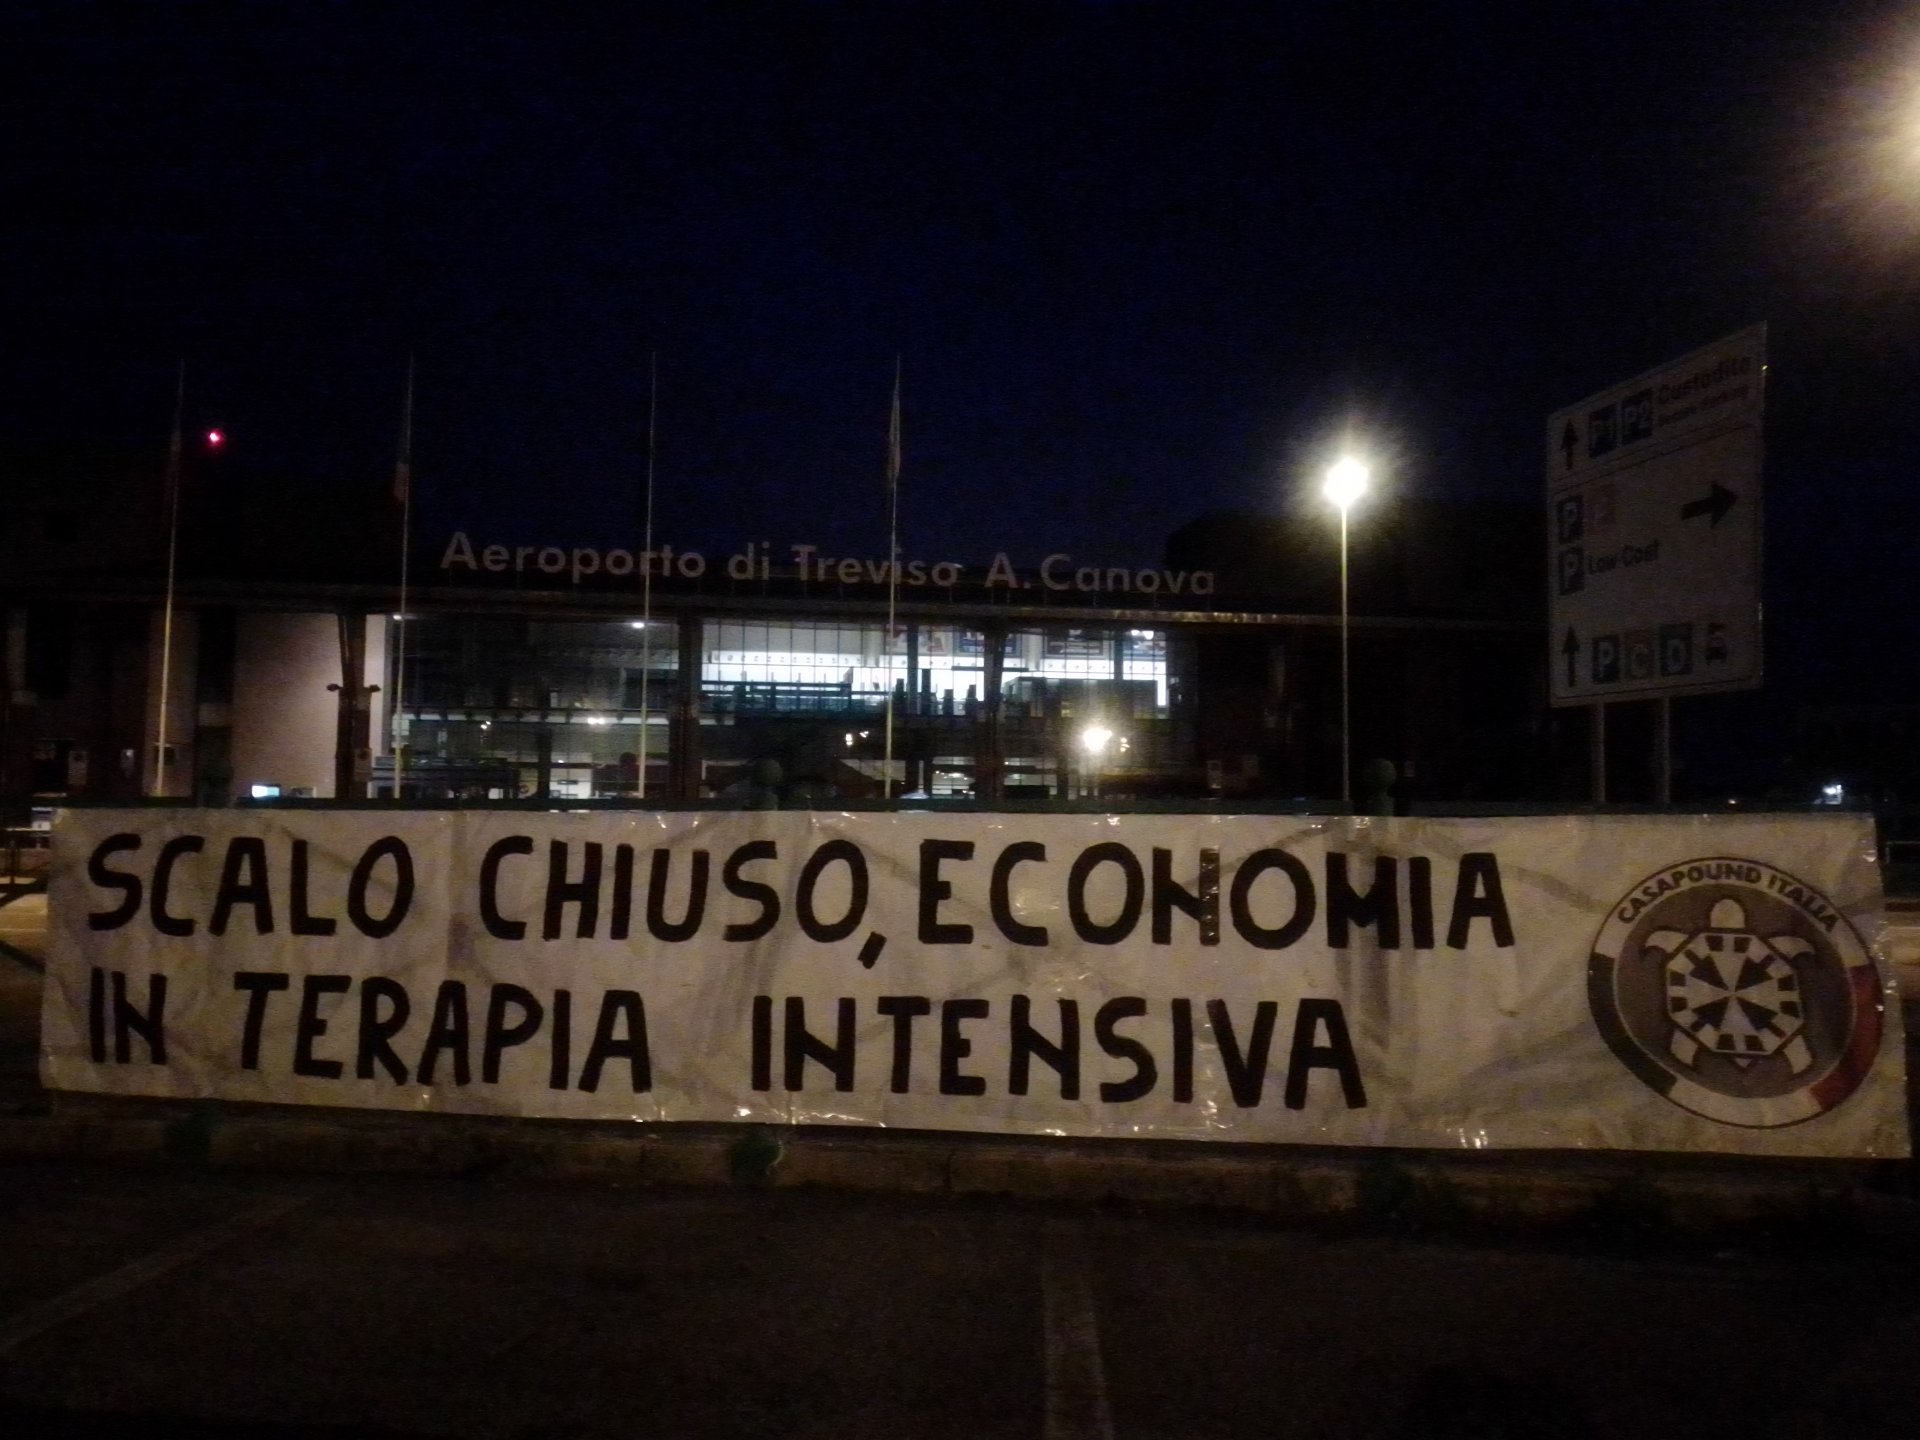 Aeroporto Canova chiuso fino a ottobre, blitz di CasaPound Treviso: "Ulteriore mazzata"